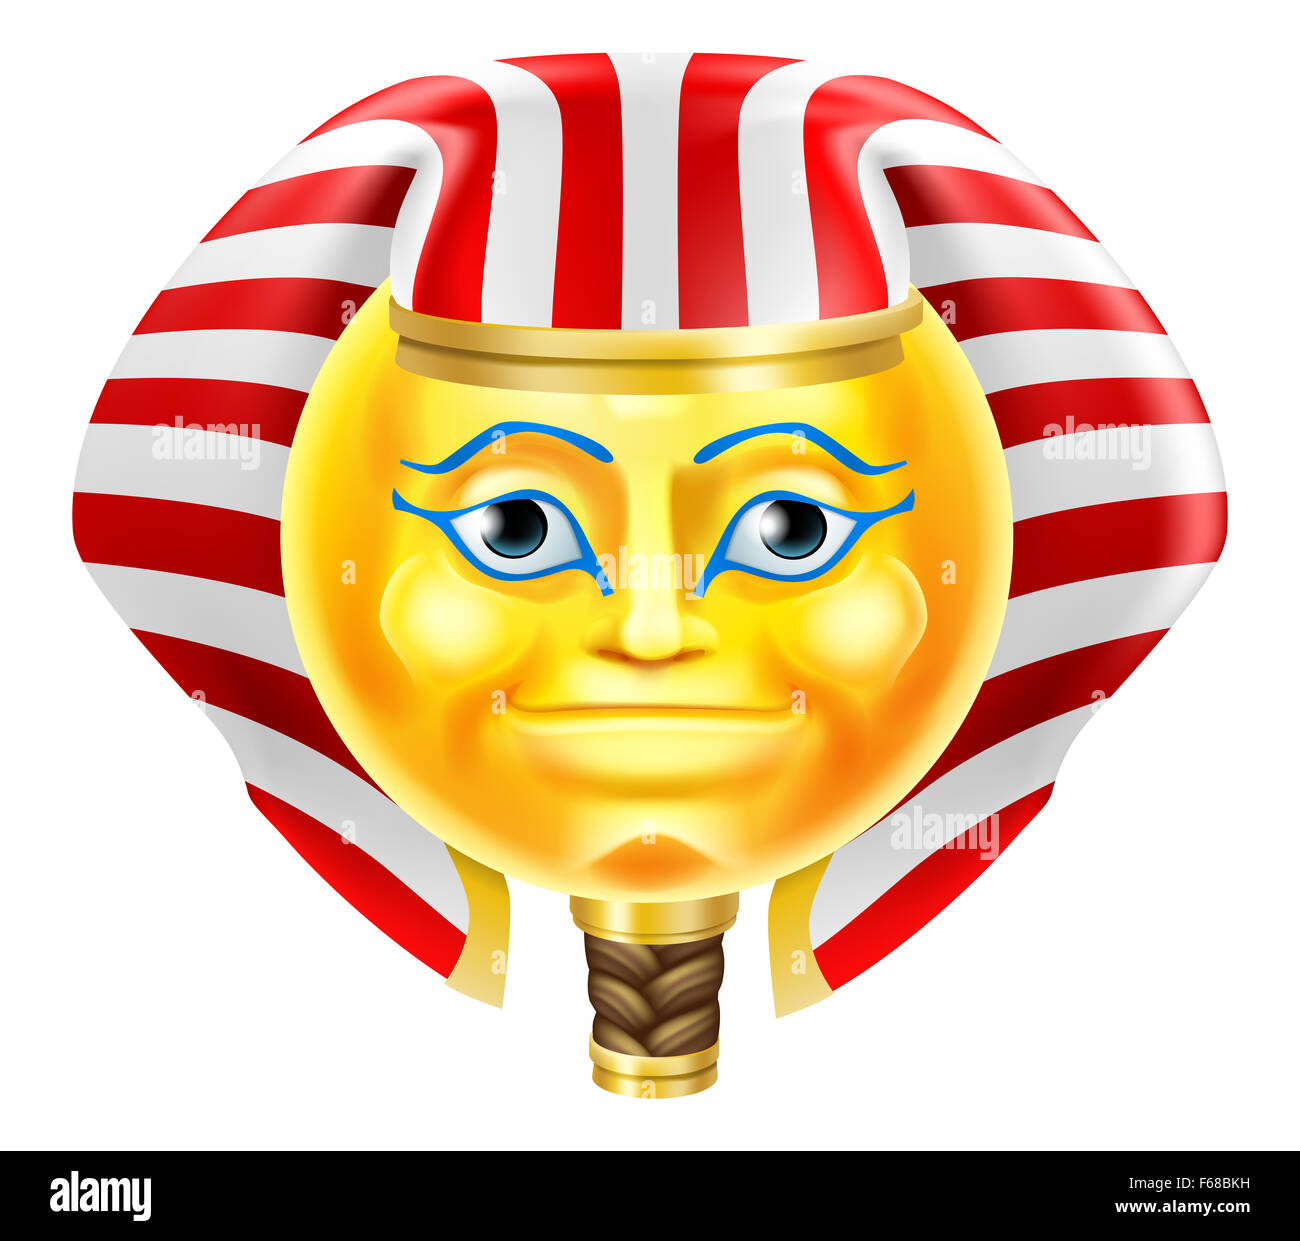 A cartoon Egyptian Pharaoh emoticon emoji character icon Stock Photo